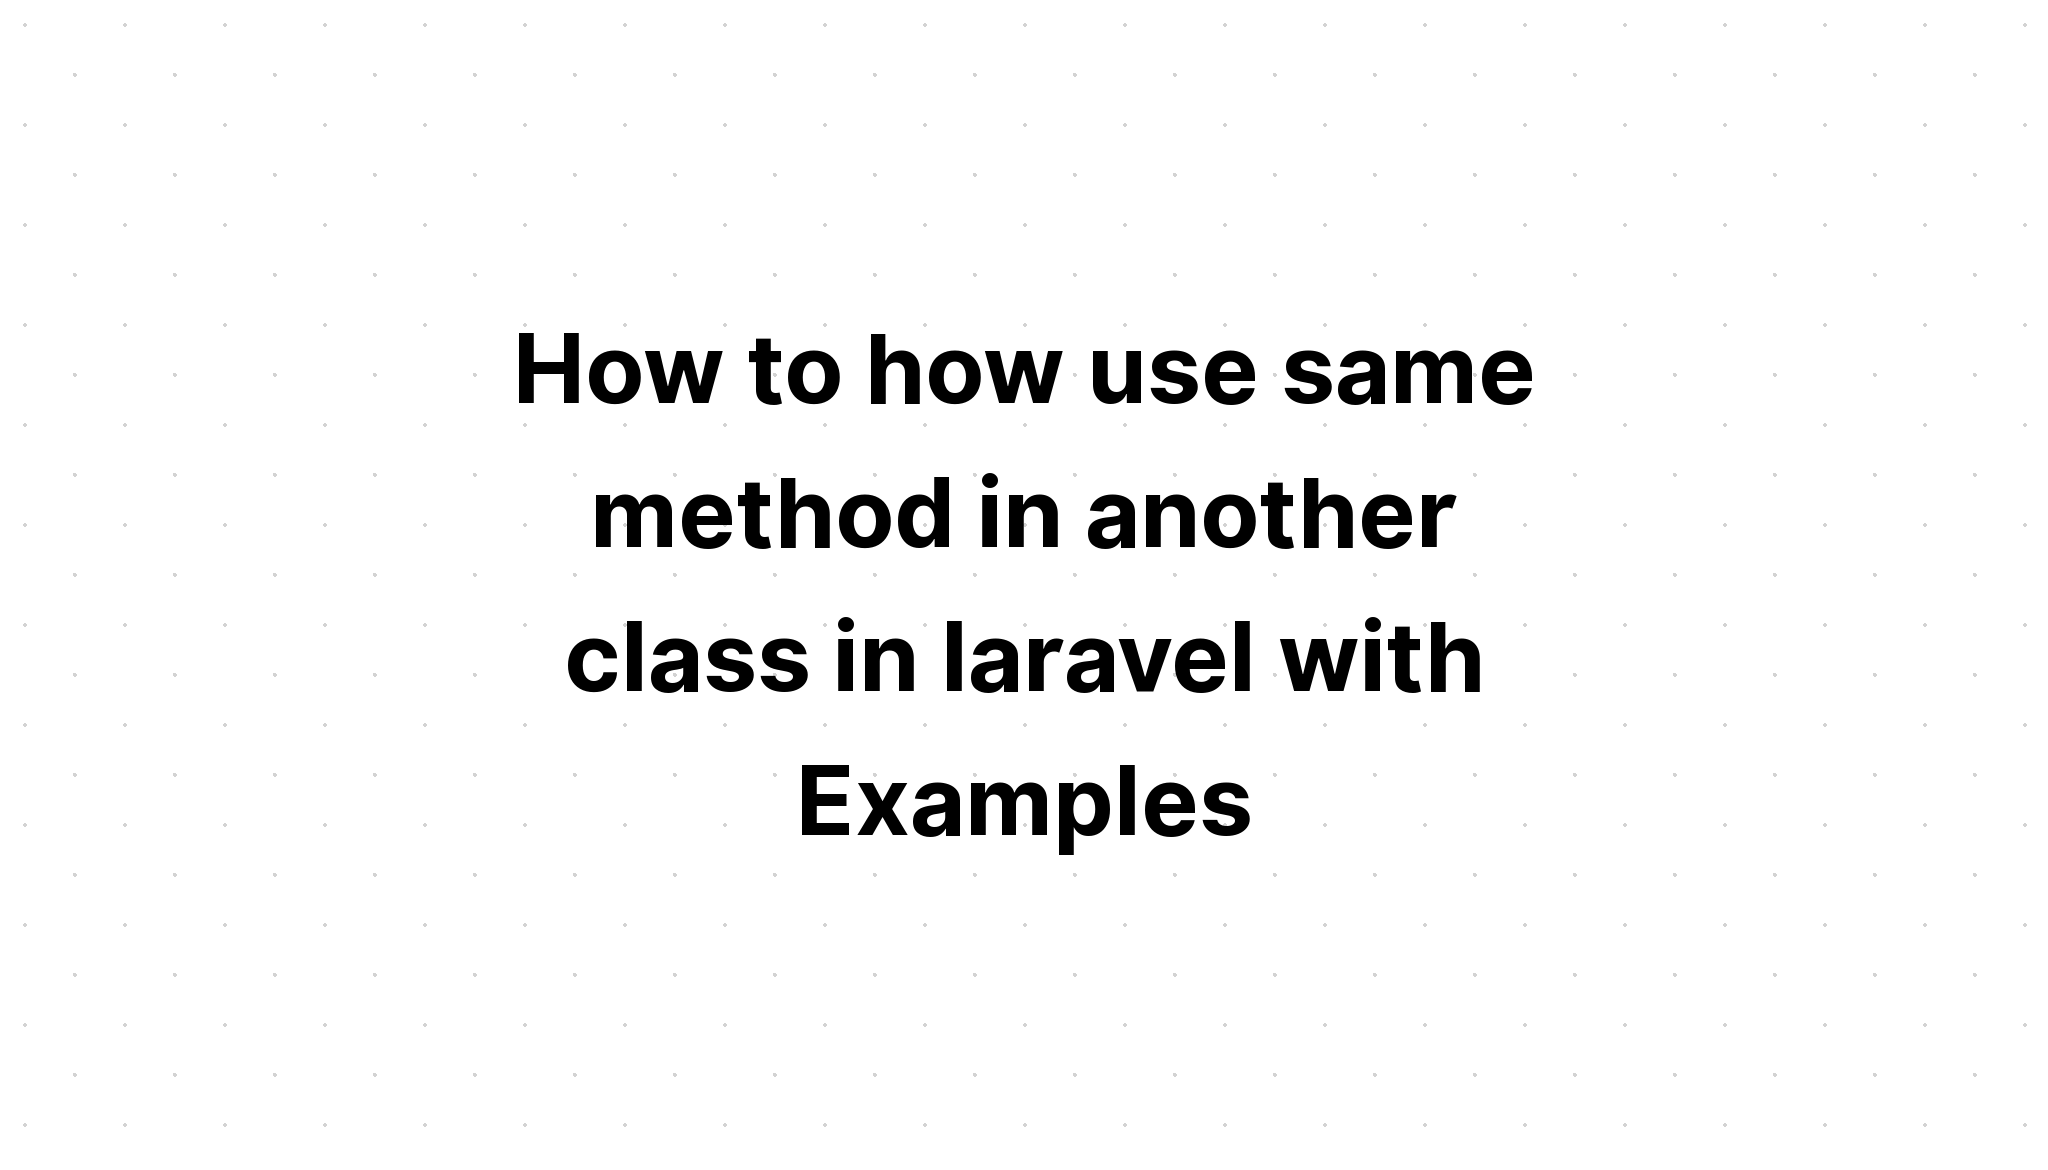 Cách sử dụng cùng một phương thức trong một lớp khác trong laravel với các ví dụ